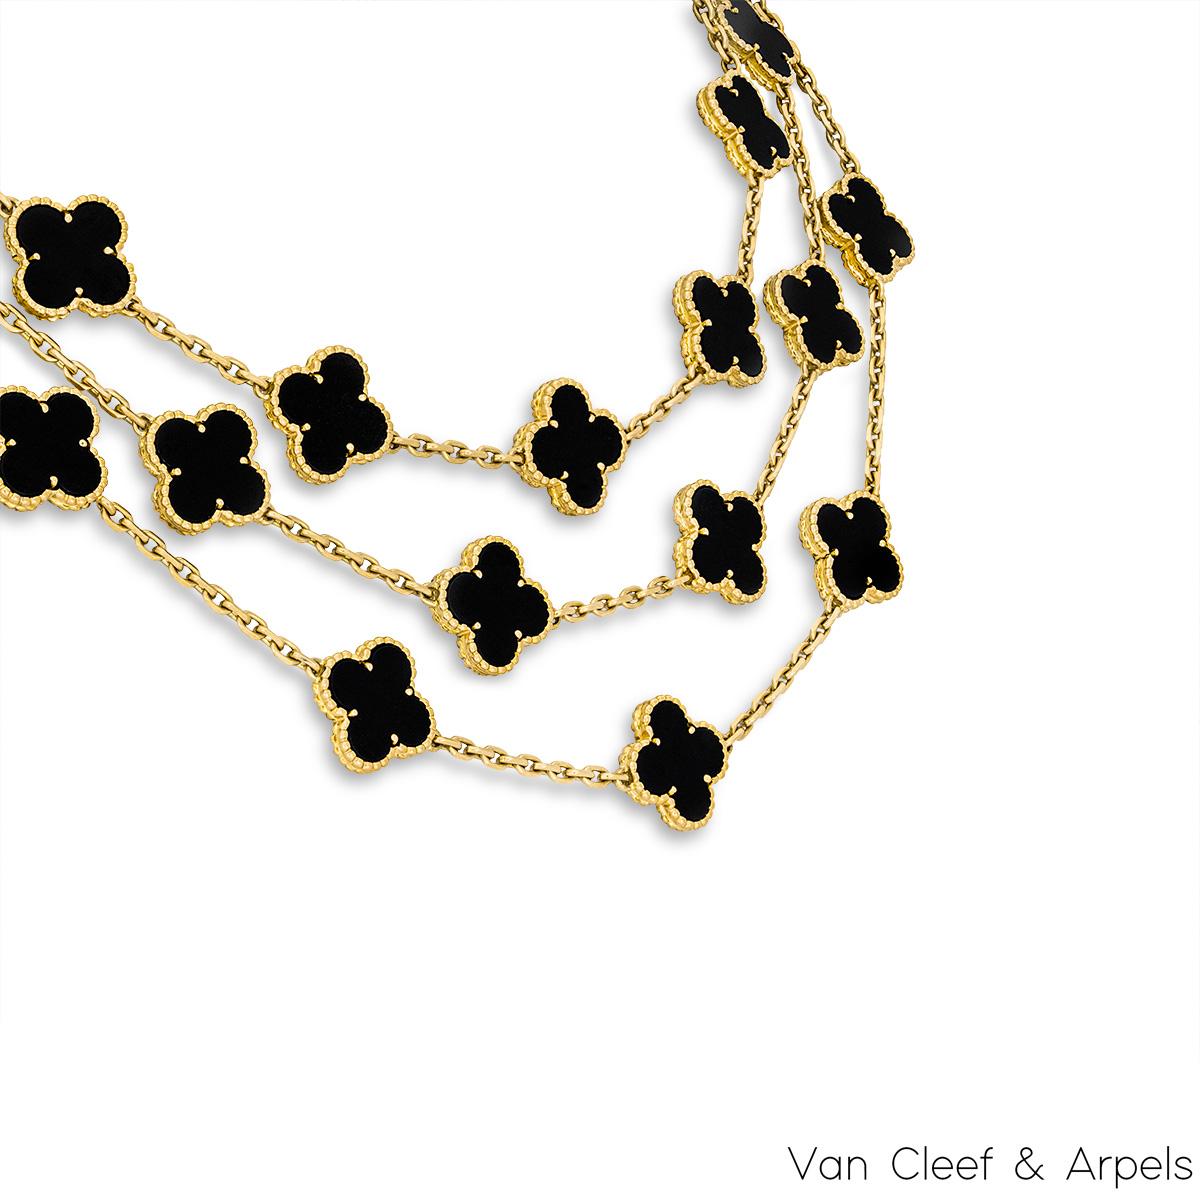 Un'iconica collana in oro giallo 18k di Van Cleef & Arpels della collezione Vintage Alhambra. La collana presenta 29 iconici motivi a quadrifoglio, ciascuno con un bordo di perline e un intarsio di onice, incastonati lungo tutta la lunghezza della